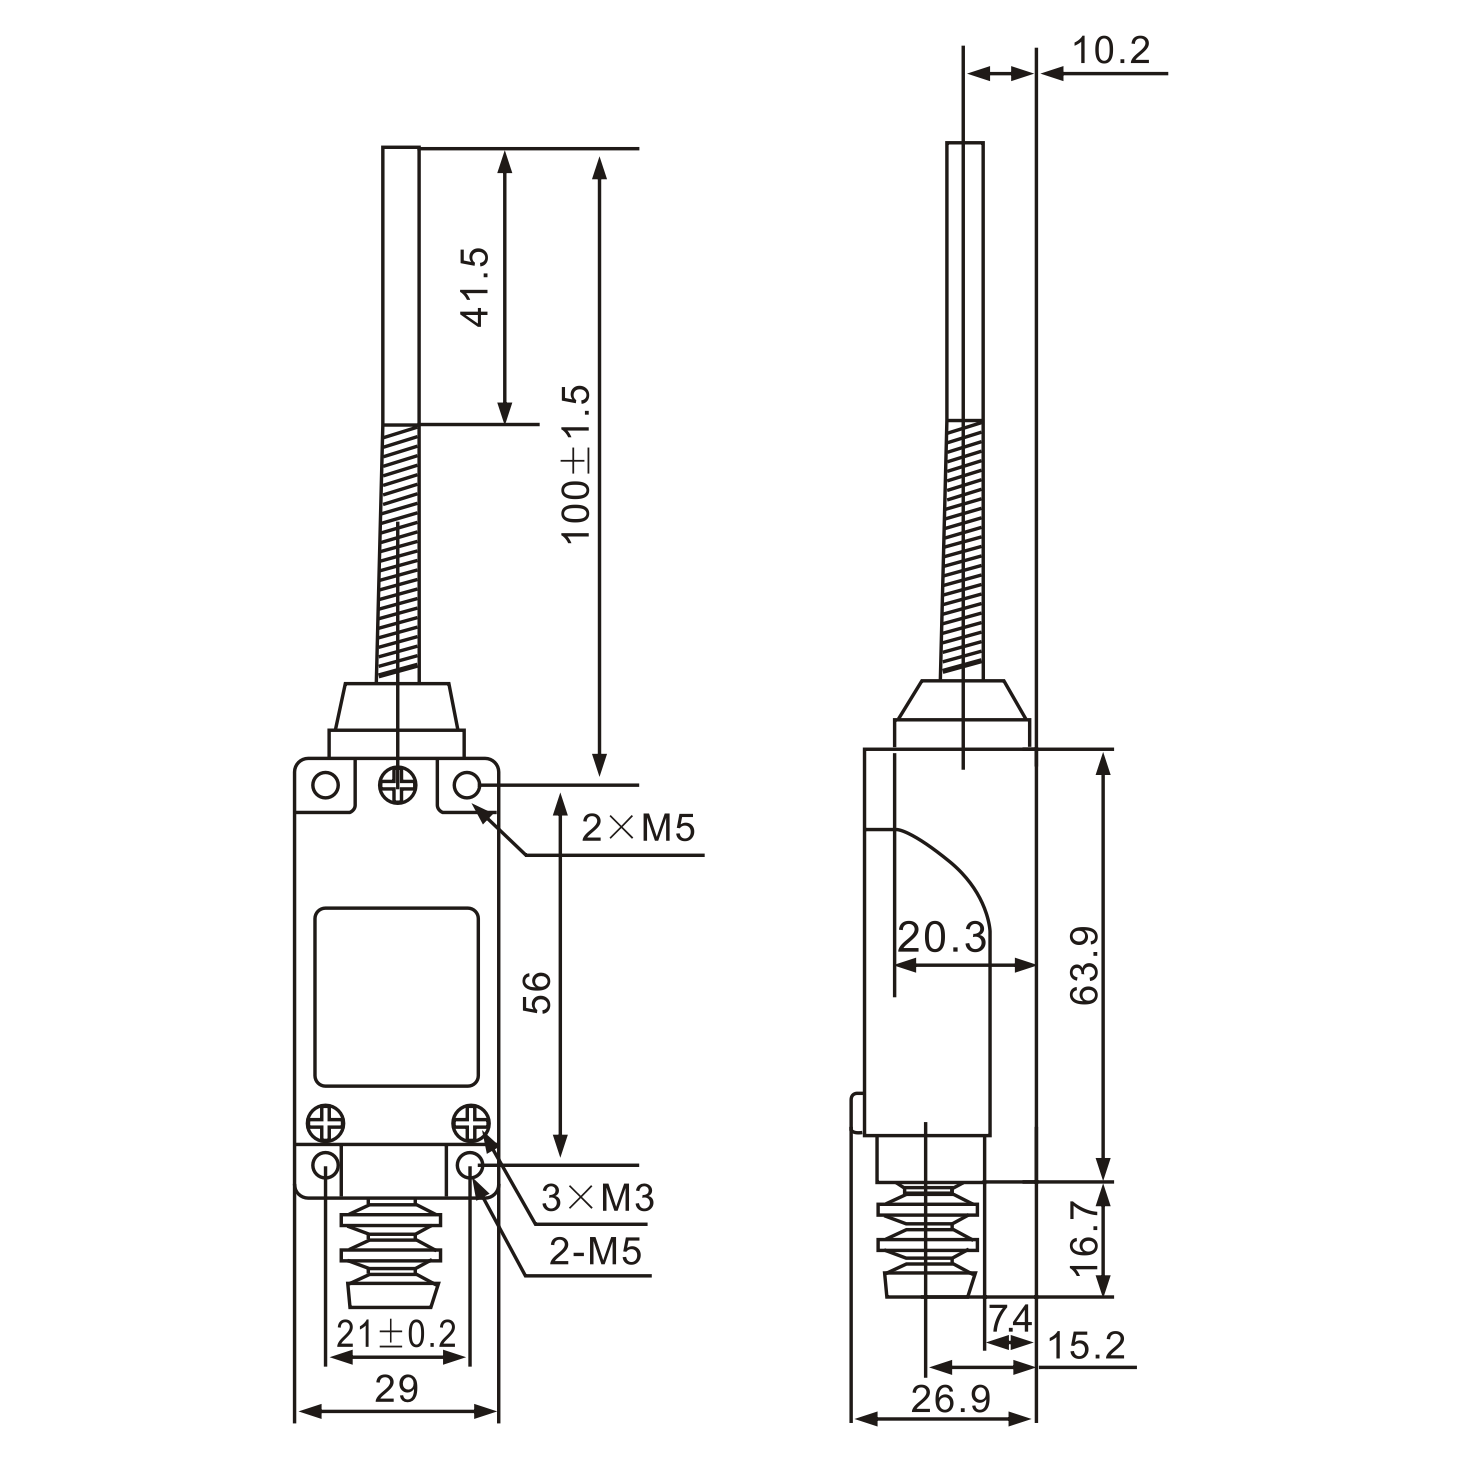 ME8168 Double Circuit, Flexible Spring Arm Limit Switch Diagram